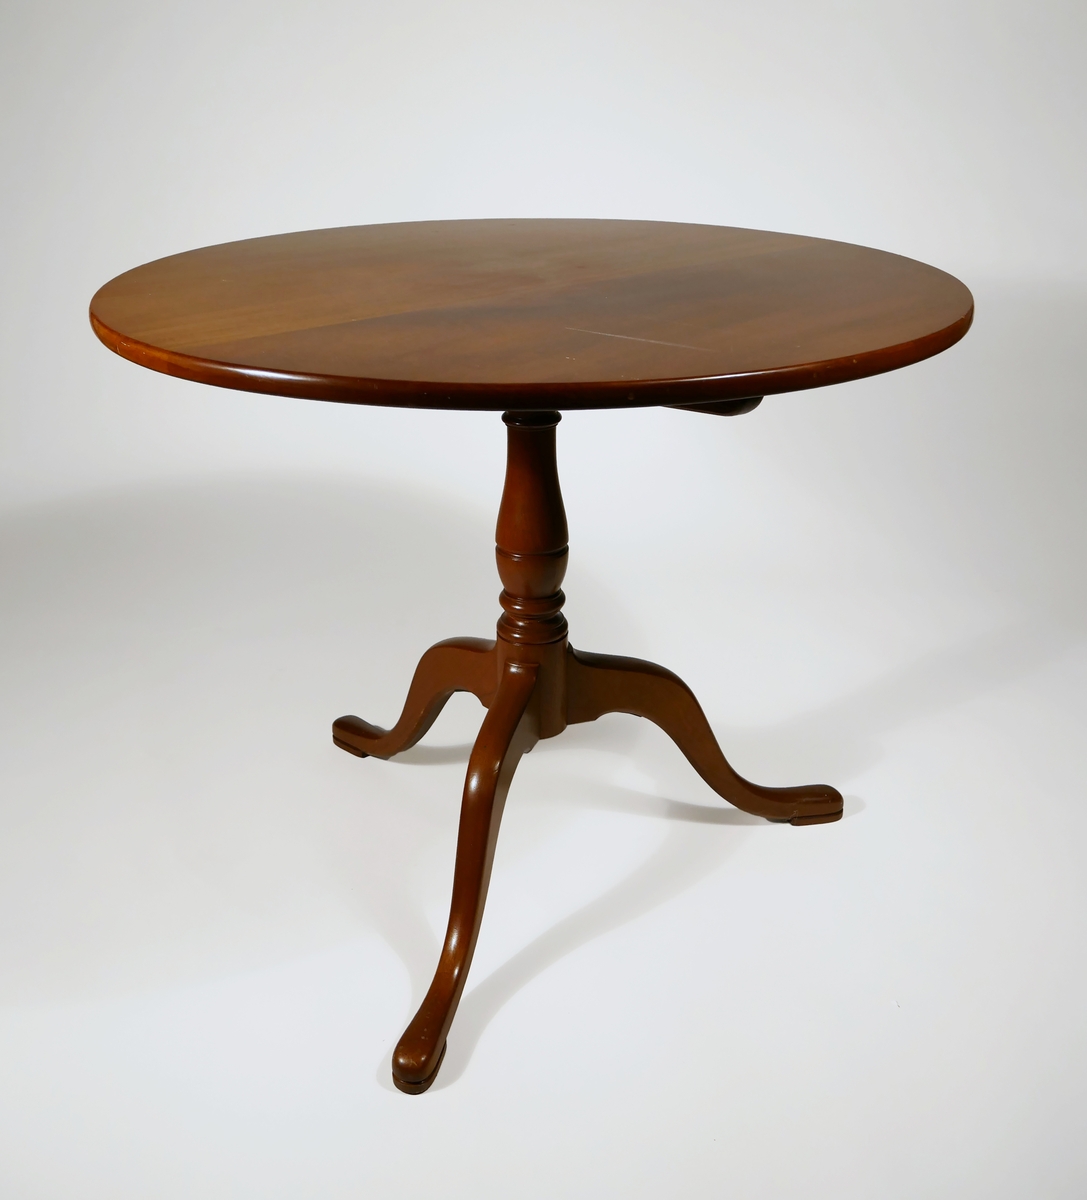 Fällbord av mahogny. Rund skiva med svarvat ben och tre fötter. Under bordsskivan är möbeln märkt J.G.A. = J.G. Axelssons snickeriverkstad.